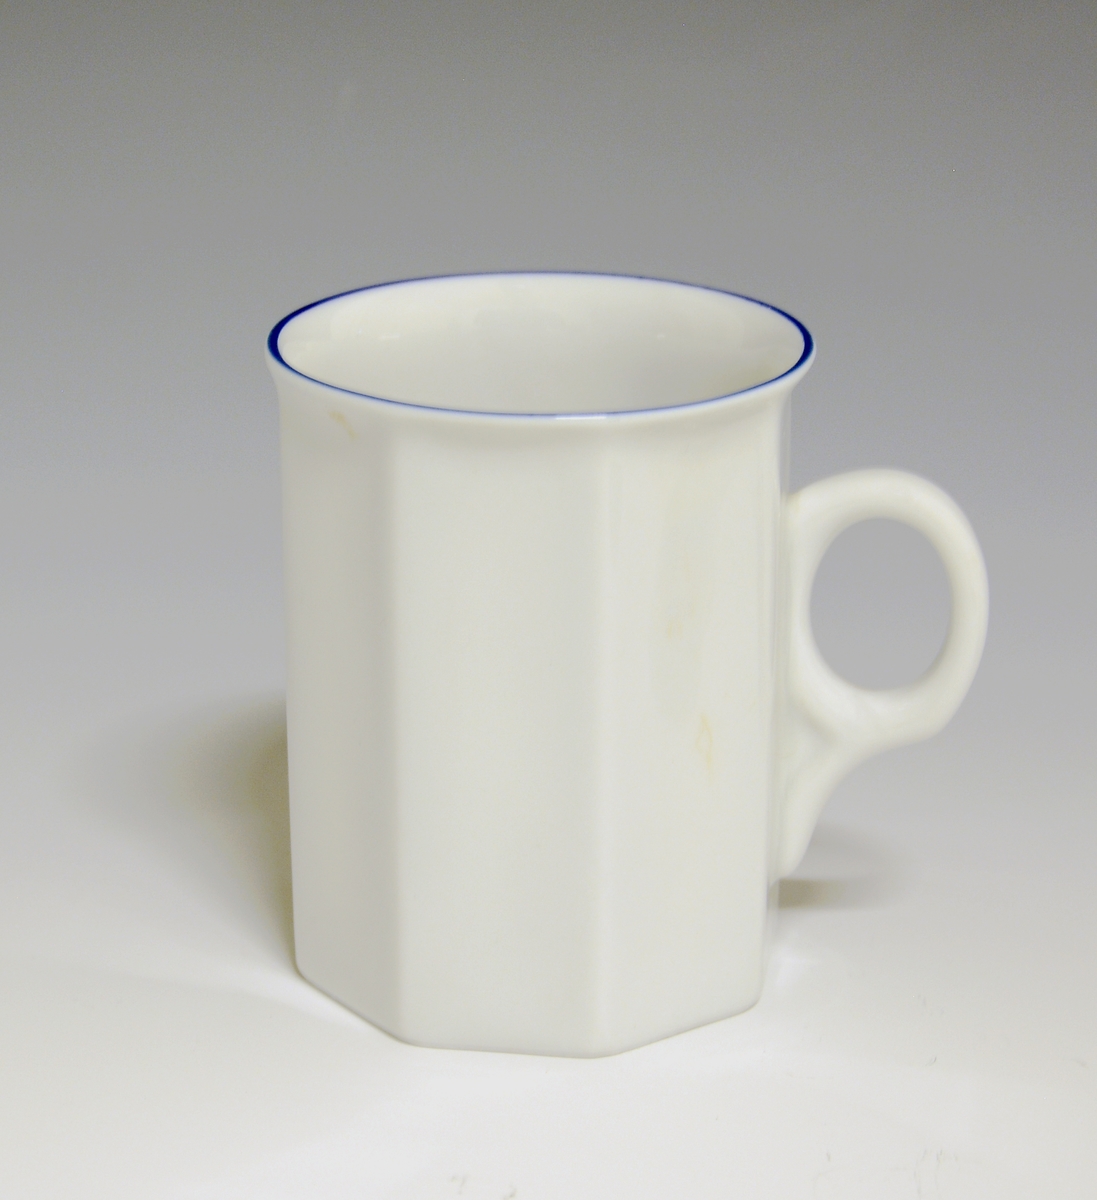 Mangekantet kopp i porselen med blå kantstrek som eneste dekor. Hvit glasur.
Modell: Octavia, tegnet av Grete Rønning i 1977.
Dekor: Blå strek